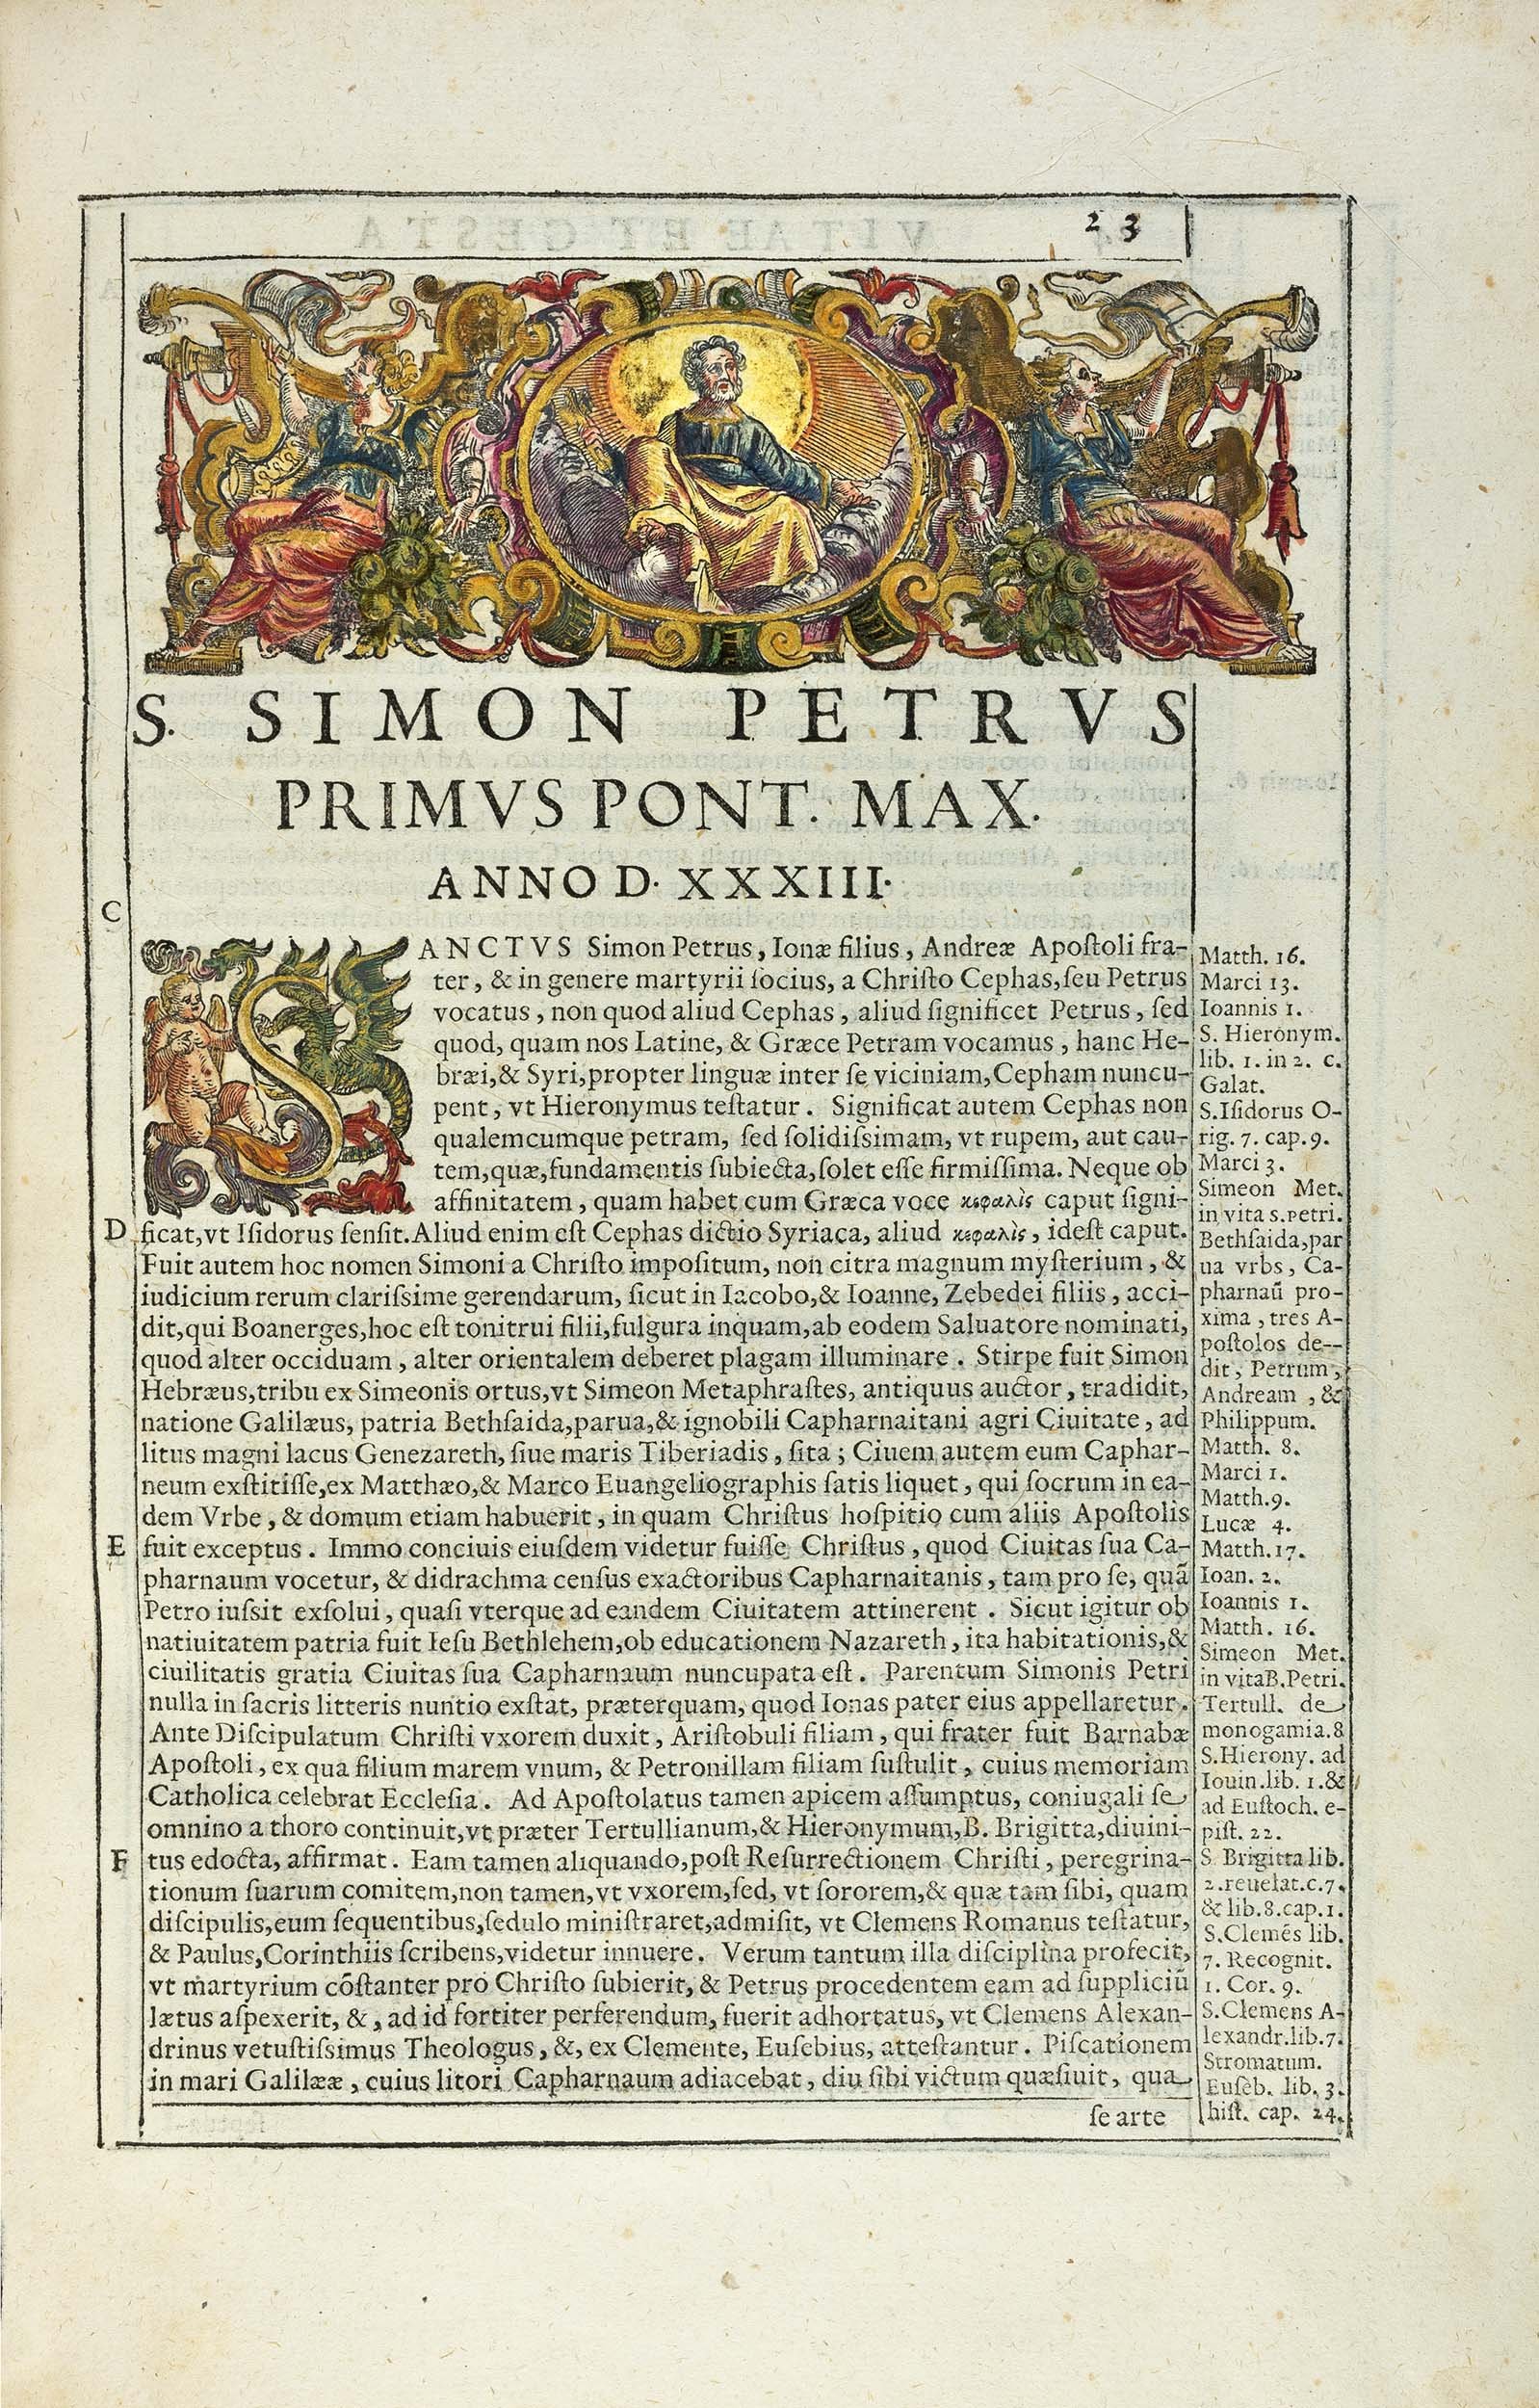 Ciaconius-Vitae-et-Gesta-1598-1601-pope-clement-viii-8.jpg